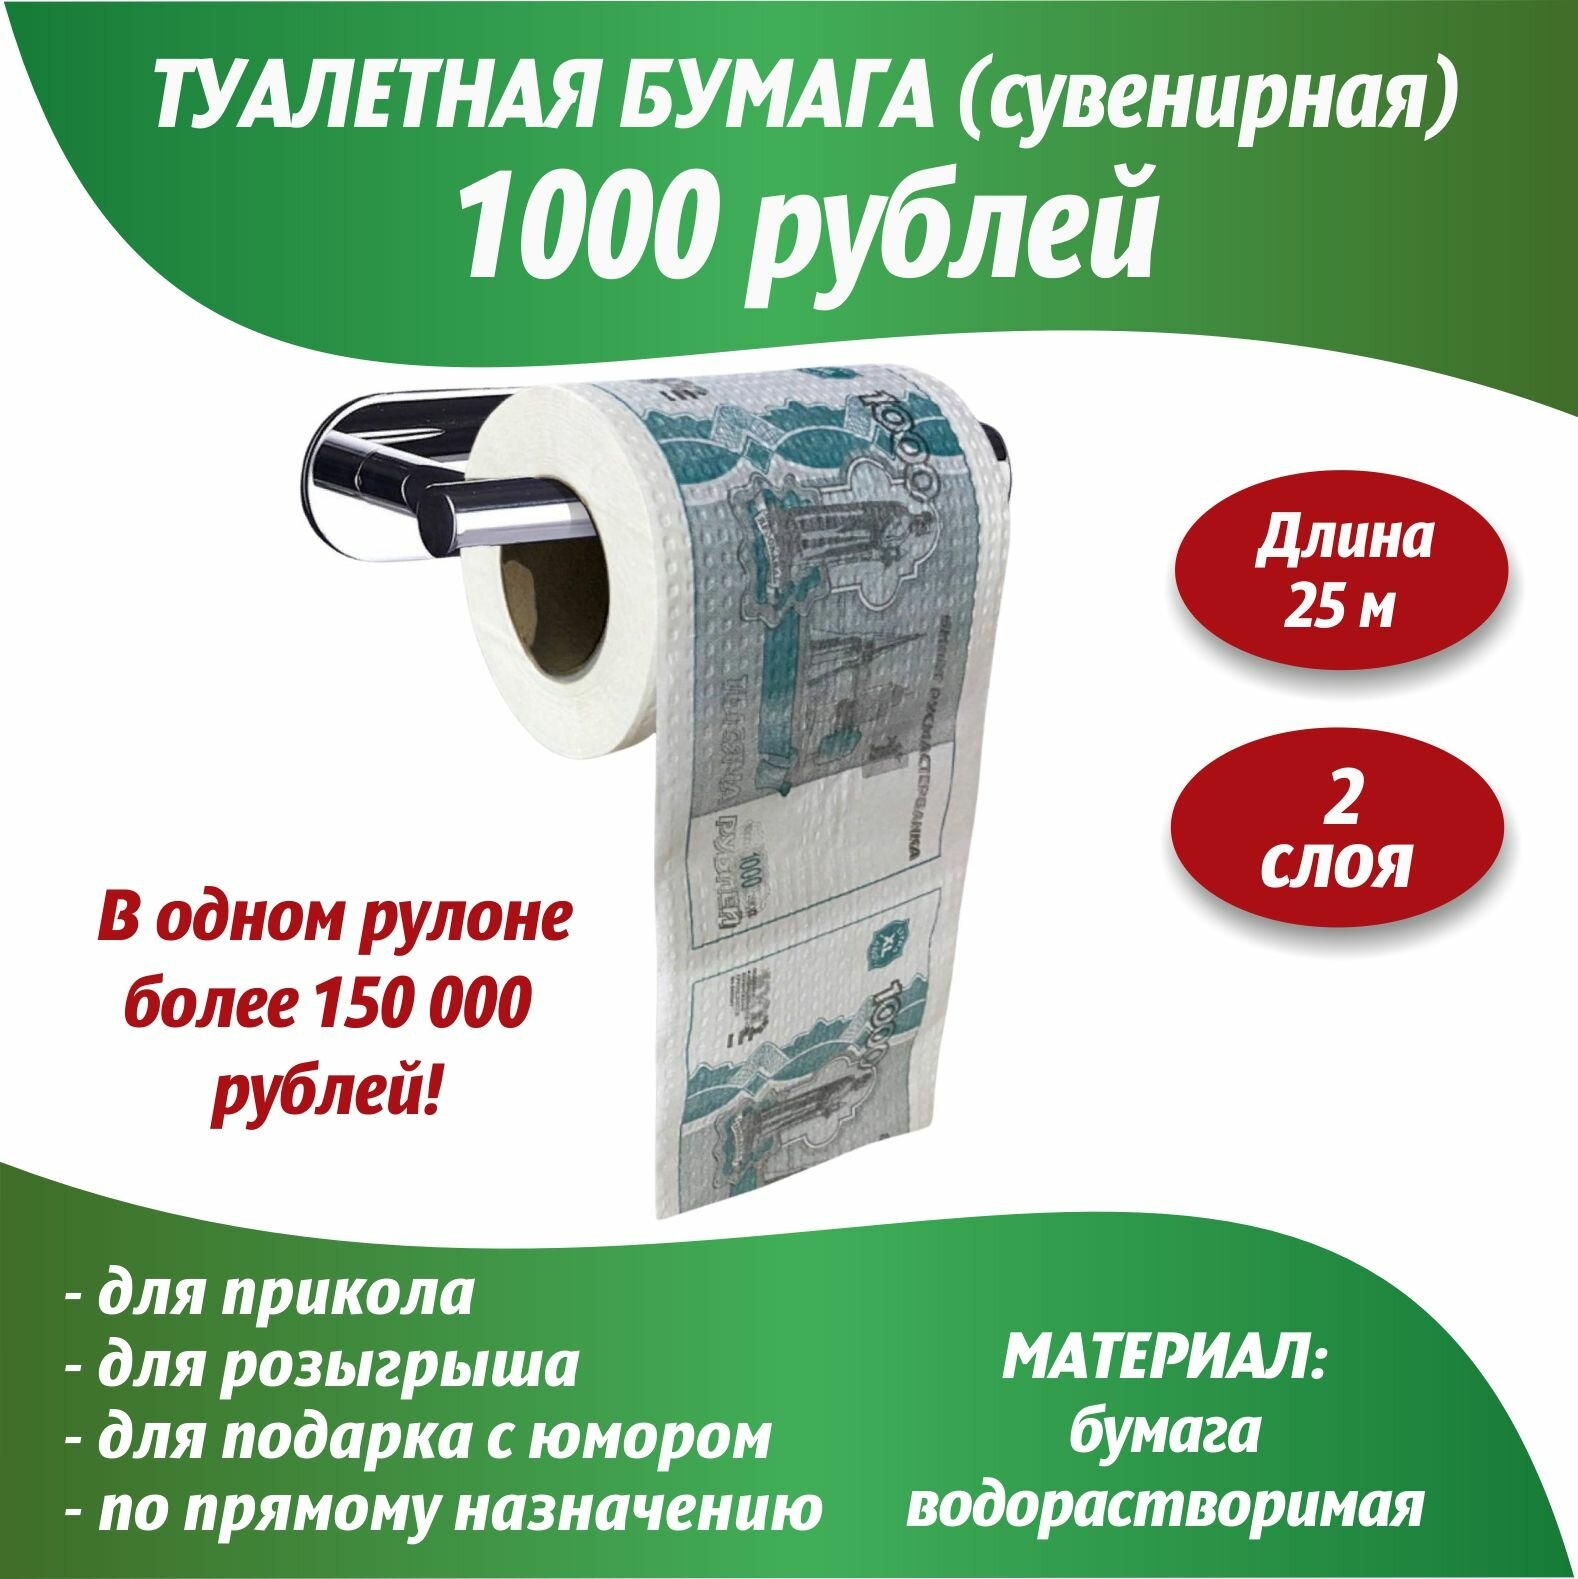 Сувенирная туалетная бумага 1000 рублей/Прикольный подарок